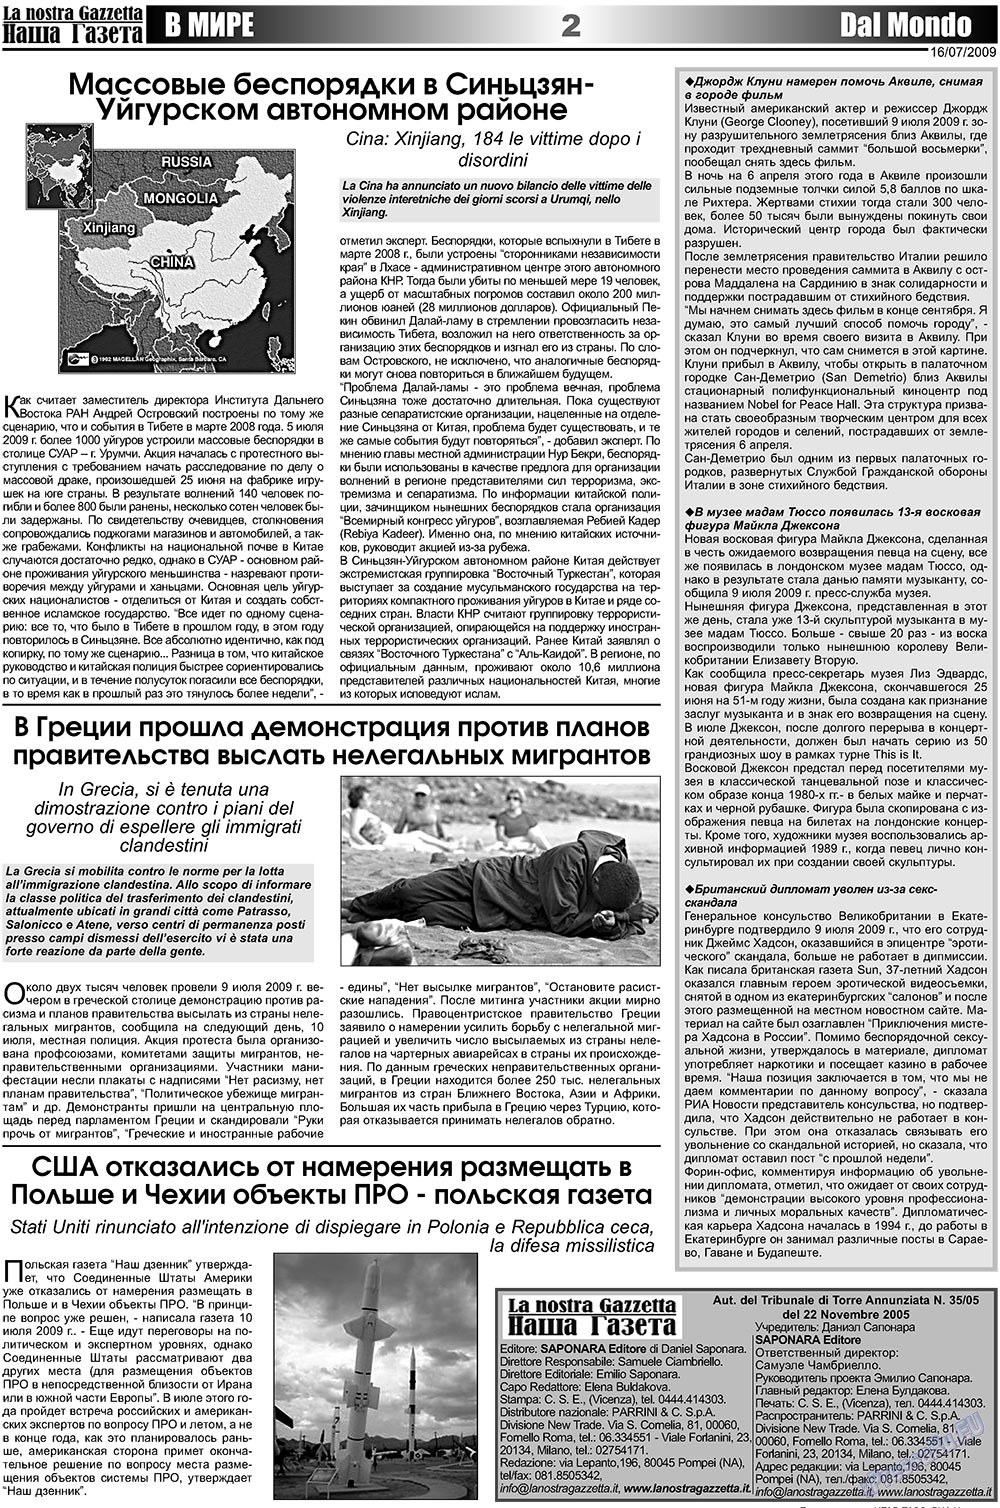 Наша Газета Италия, газета. 2009 №14 стр.2